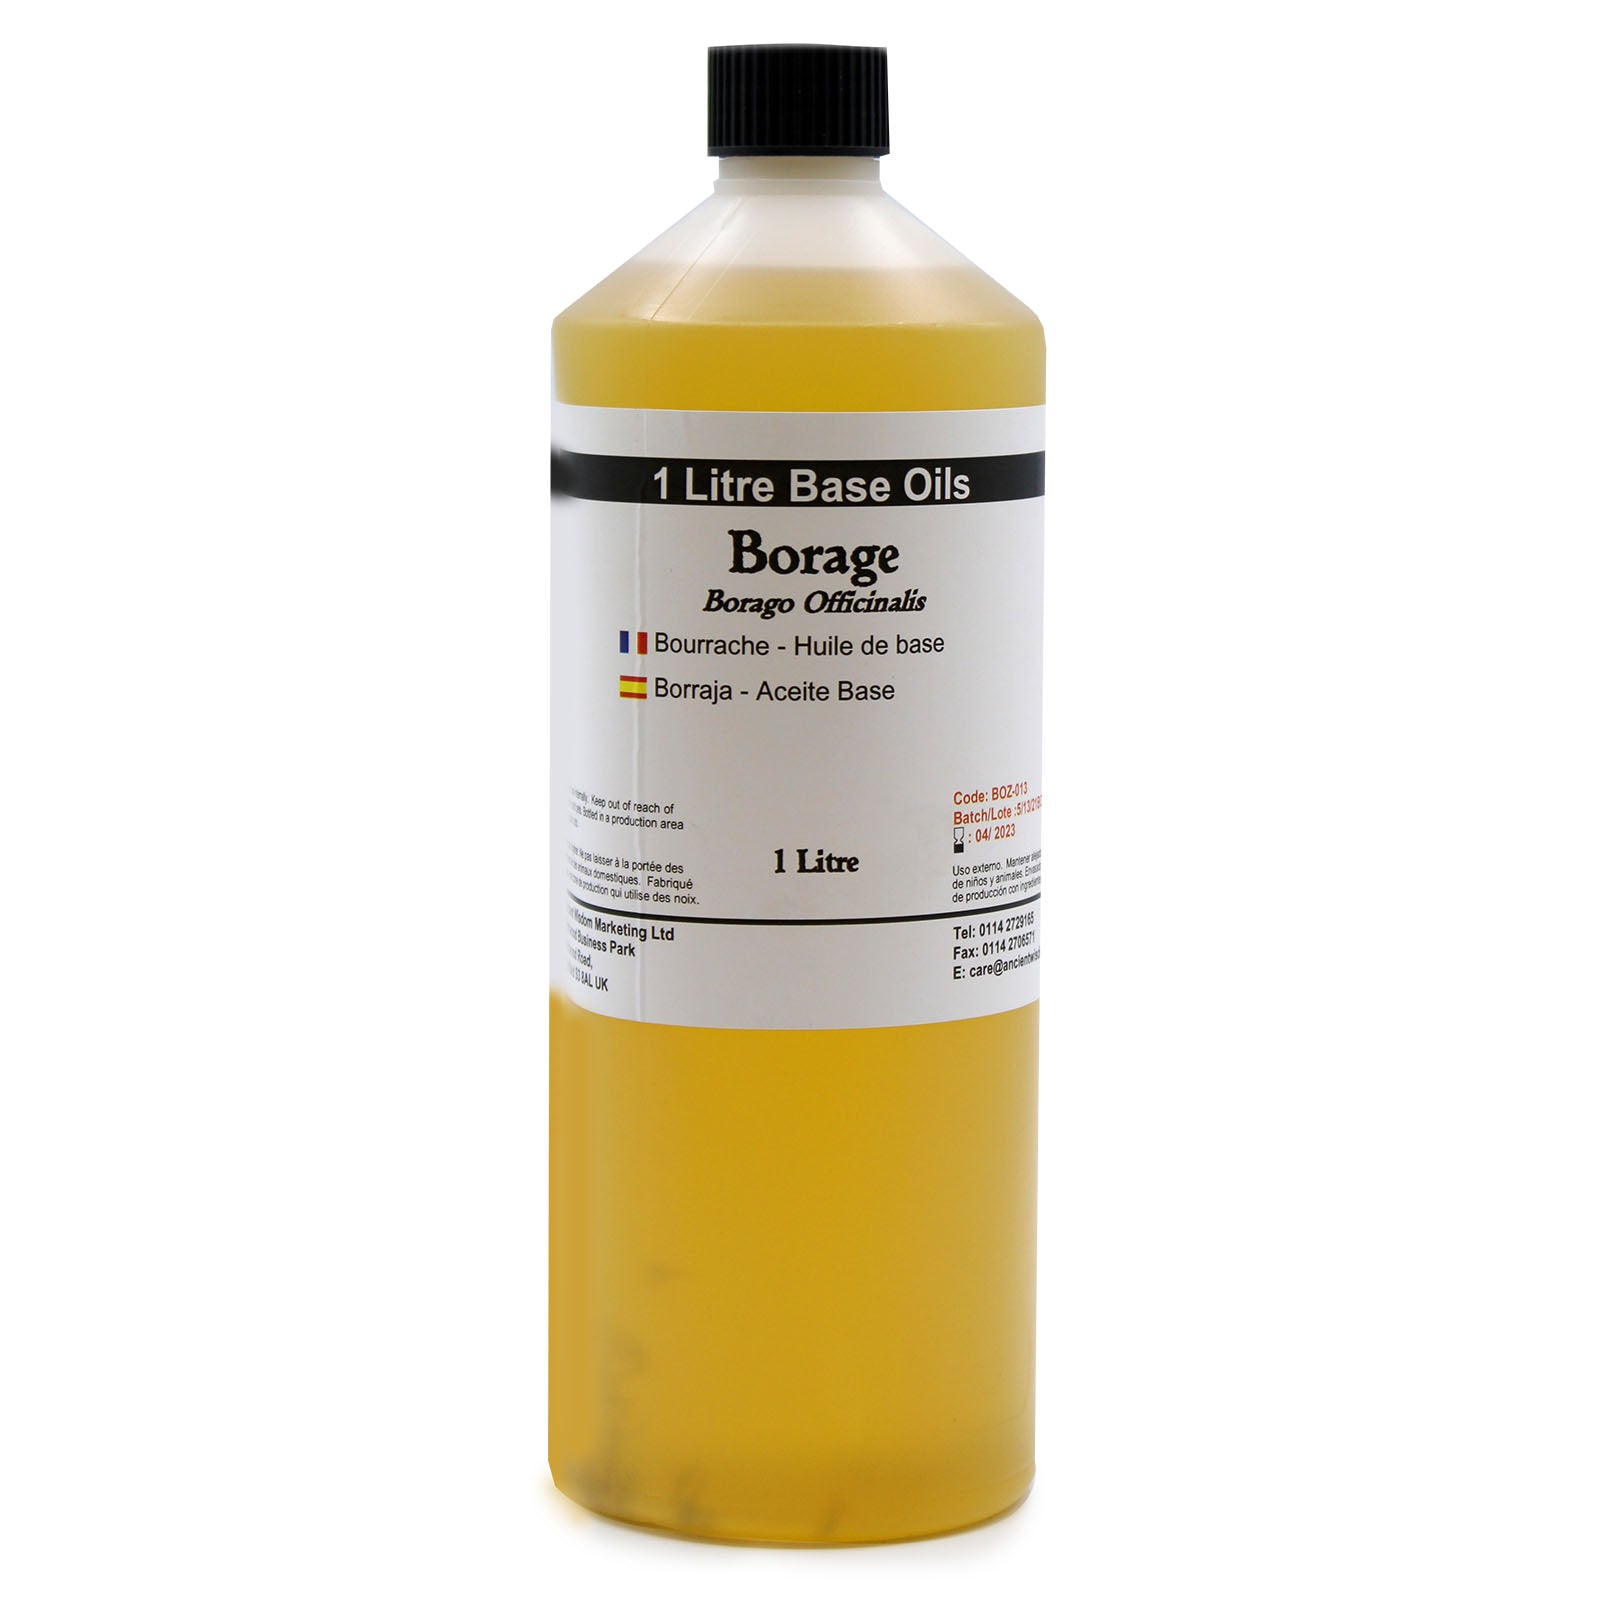 View Borage Oil 1 Litre information